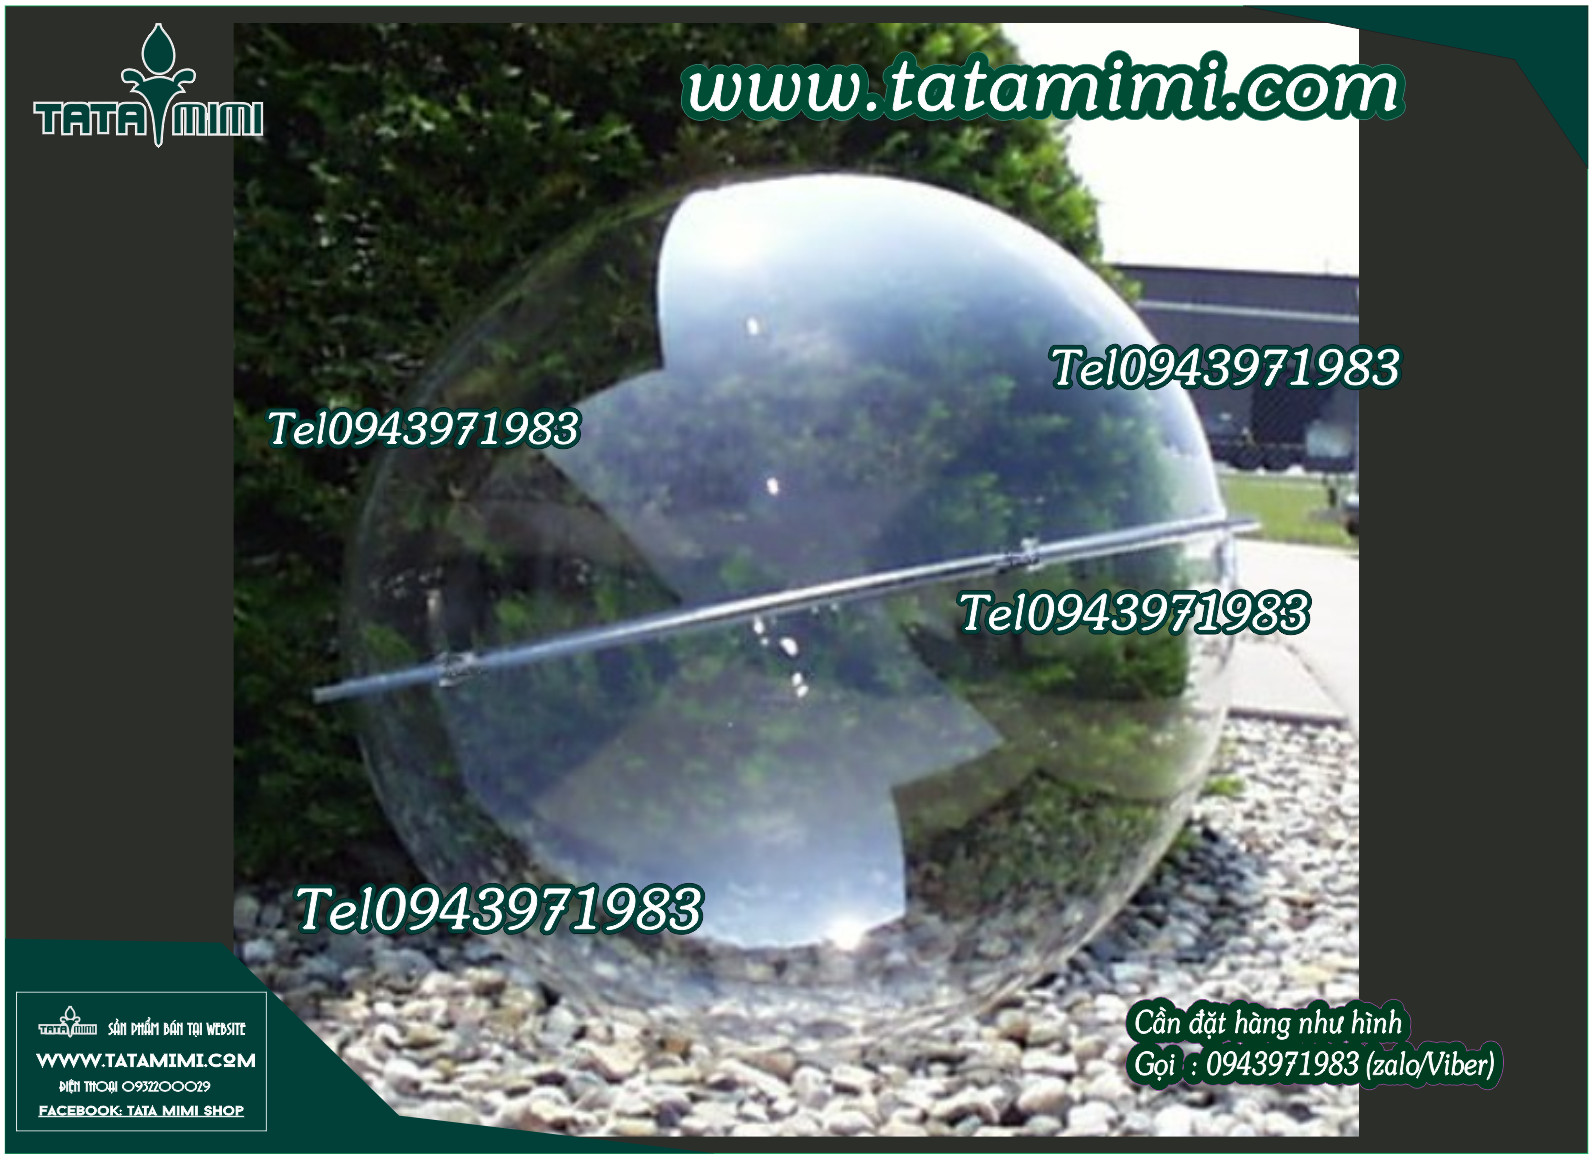 Hút nổi mica thành ½ quả cầu tại Tatamimi.com